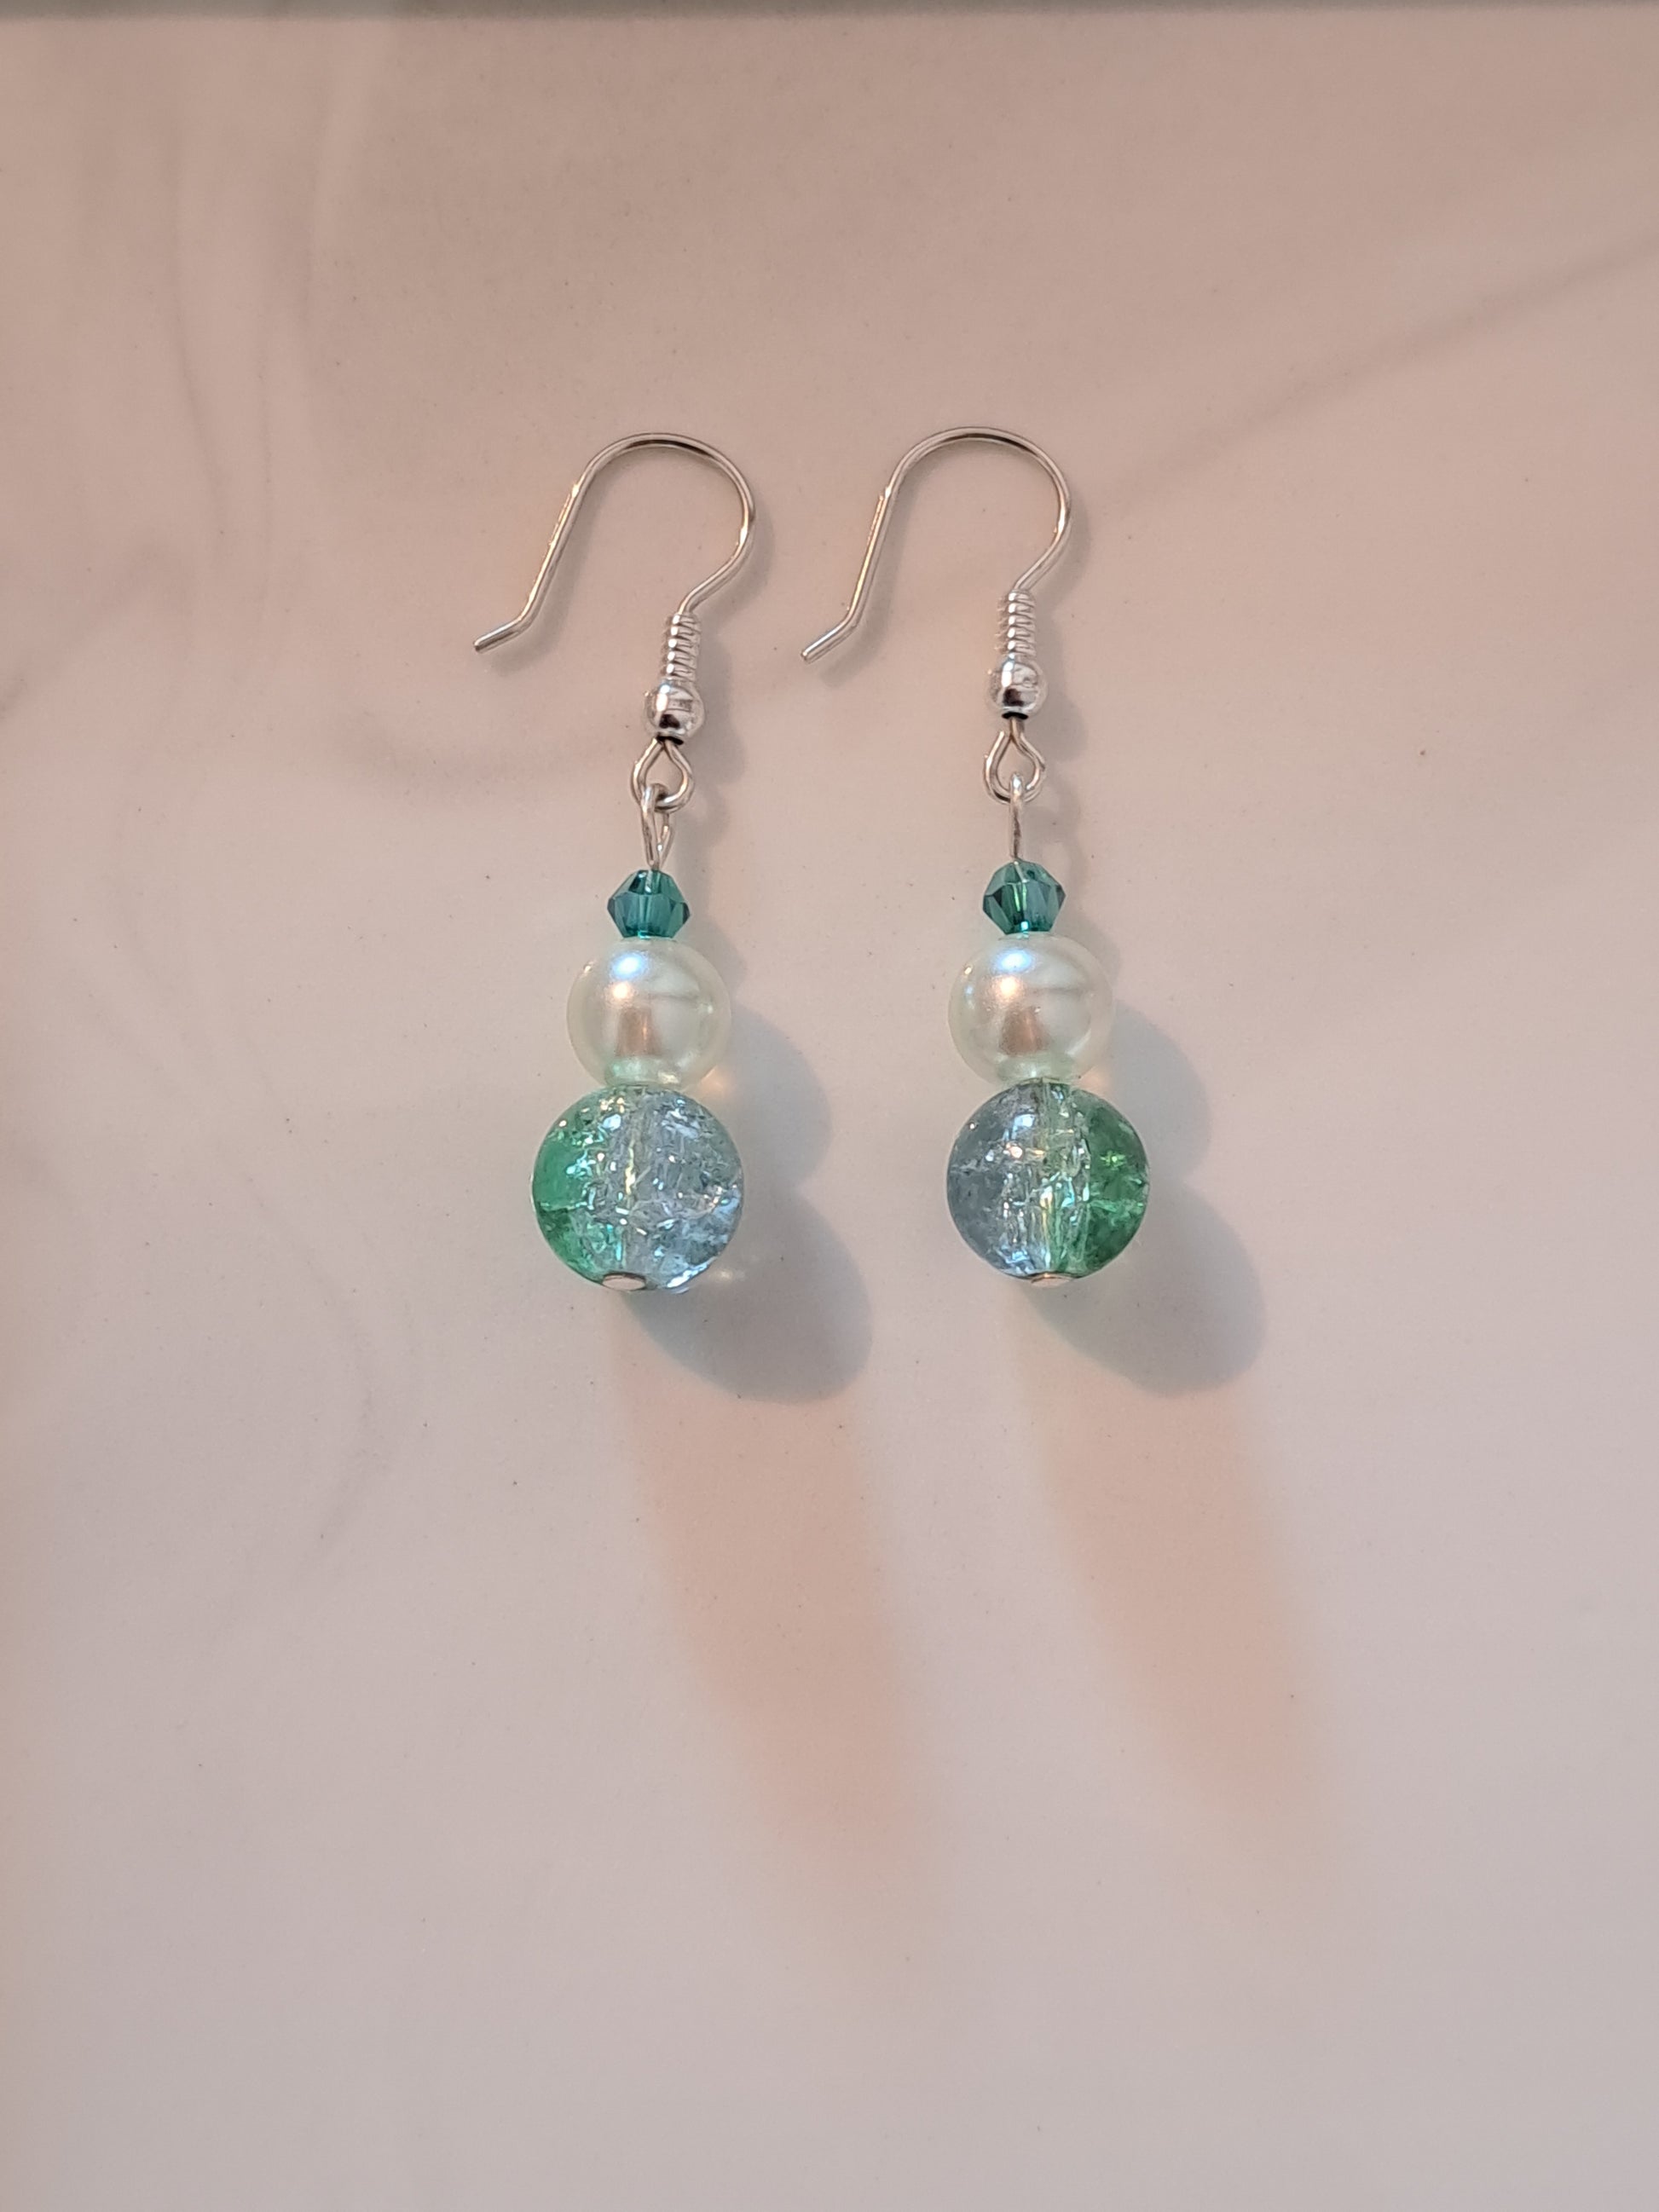 Boucles d'oreilles en argent avec perles blanches et turquoise. Site de bijoux en ligne. France